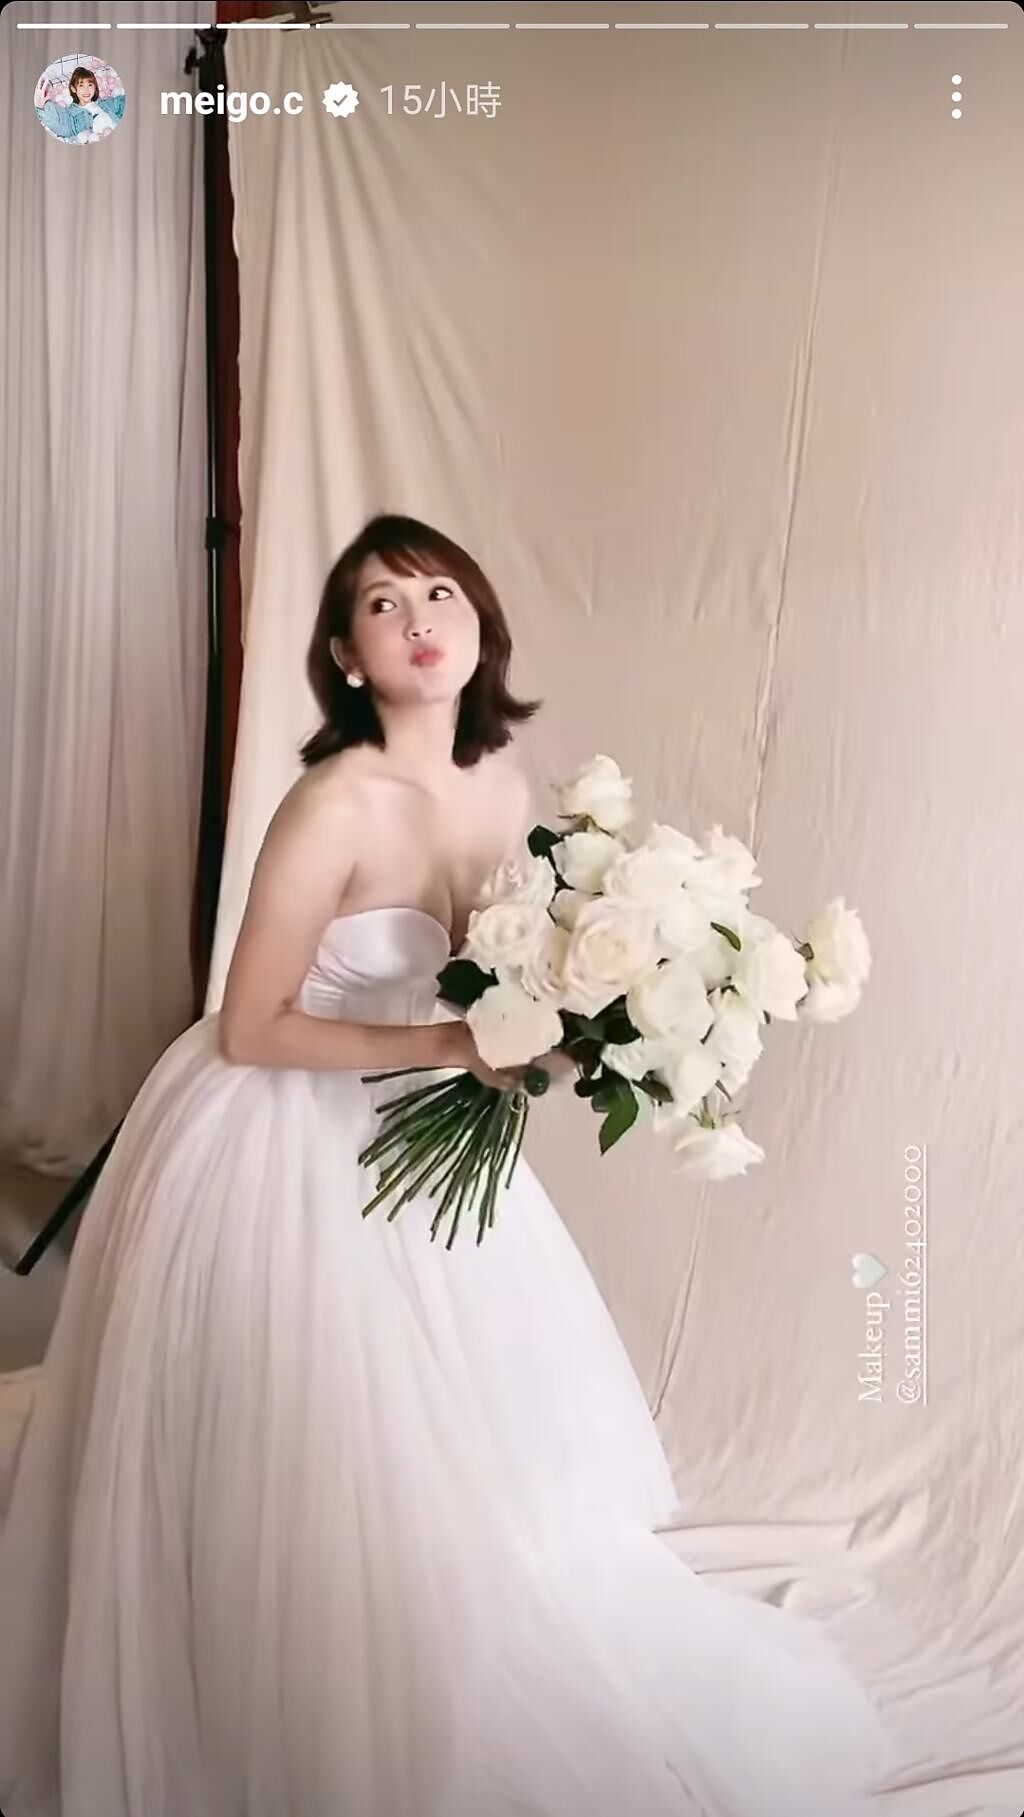 粿粿在婚紗照花絮舉著白色捧花。（圖／meigo.c instagram）